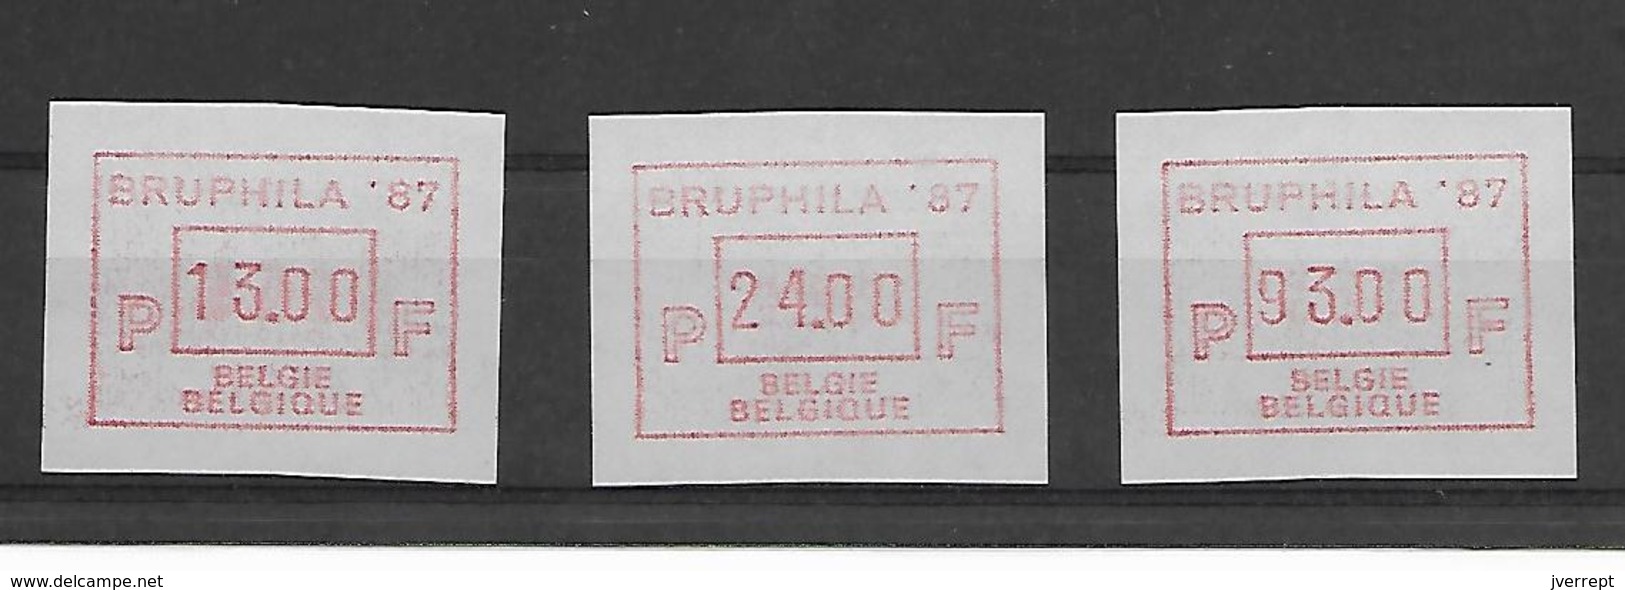 België Automaatzegels N°63  13-24-93 FR - 1980-99